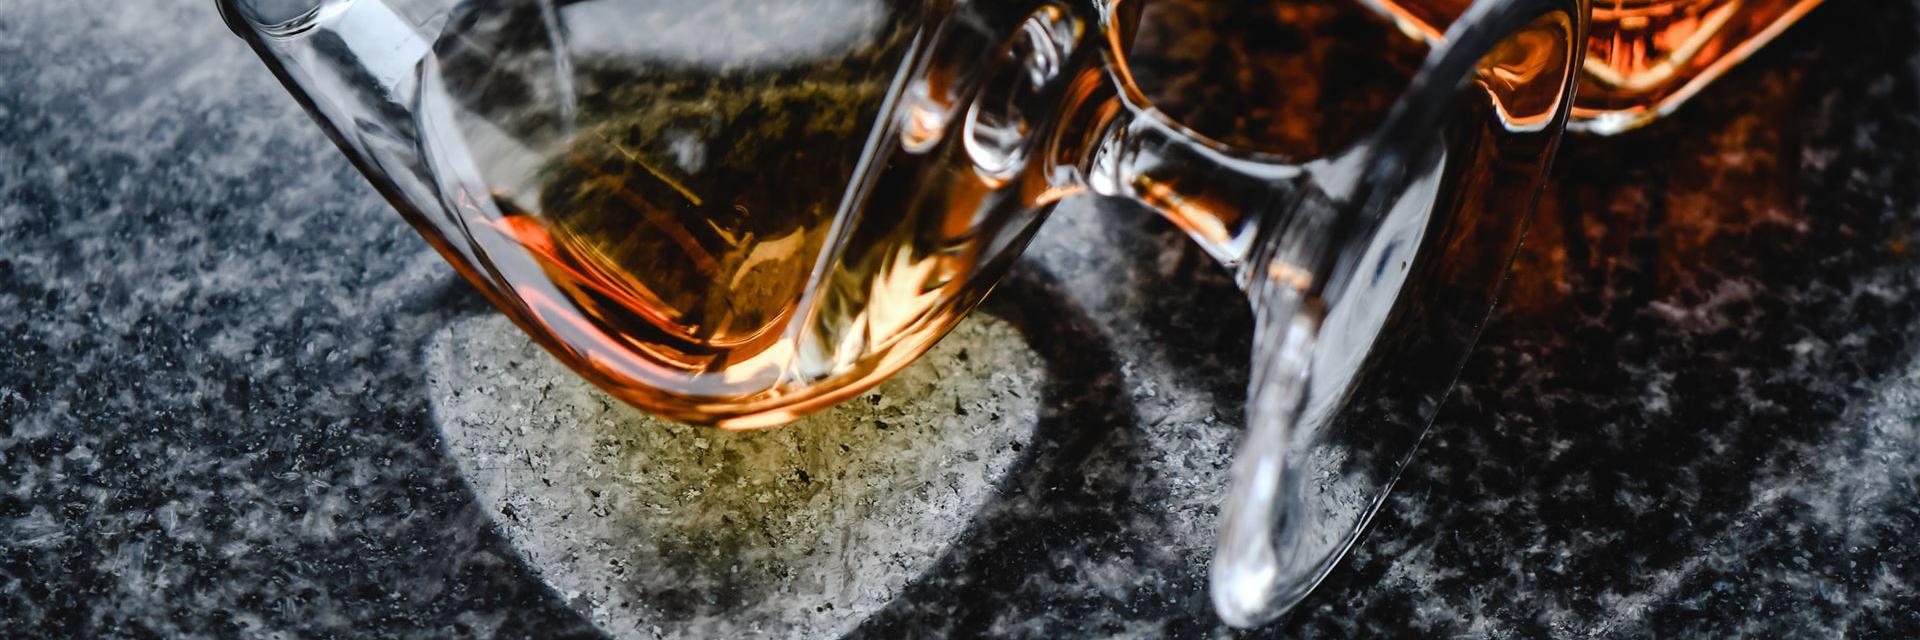 Kostenloses Stock Foto zu alkoholisches getränk, cognac, flasche